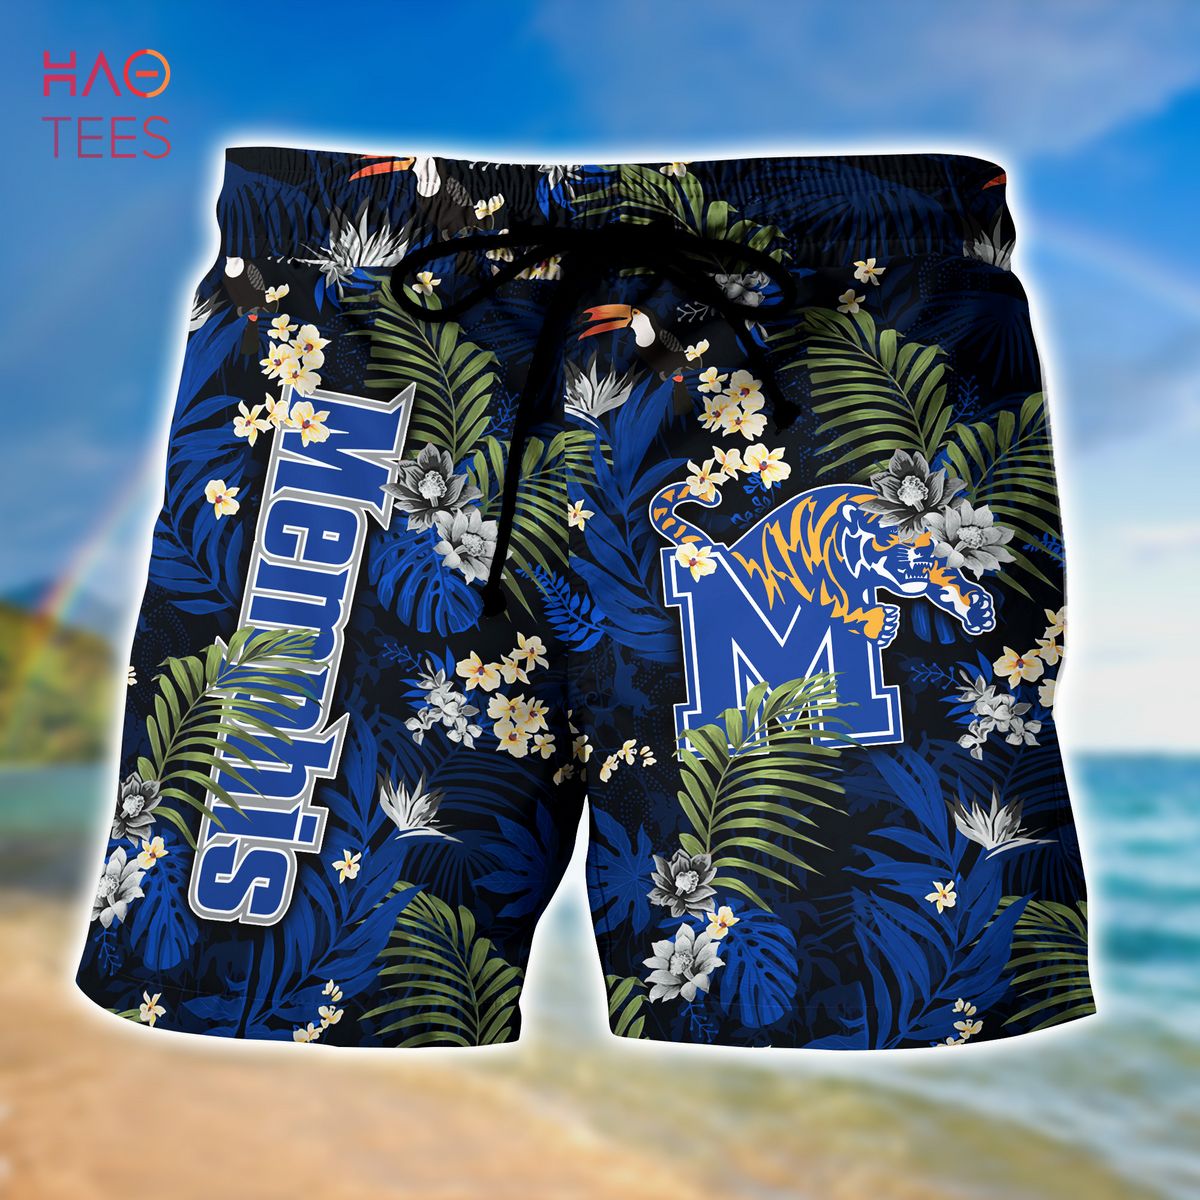 Tampa Bay Rays Hawaiian Shirt And Shorts - EmonShop - Tagotee